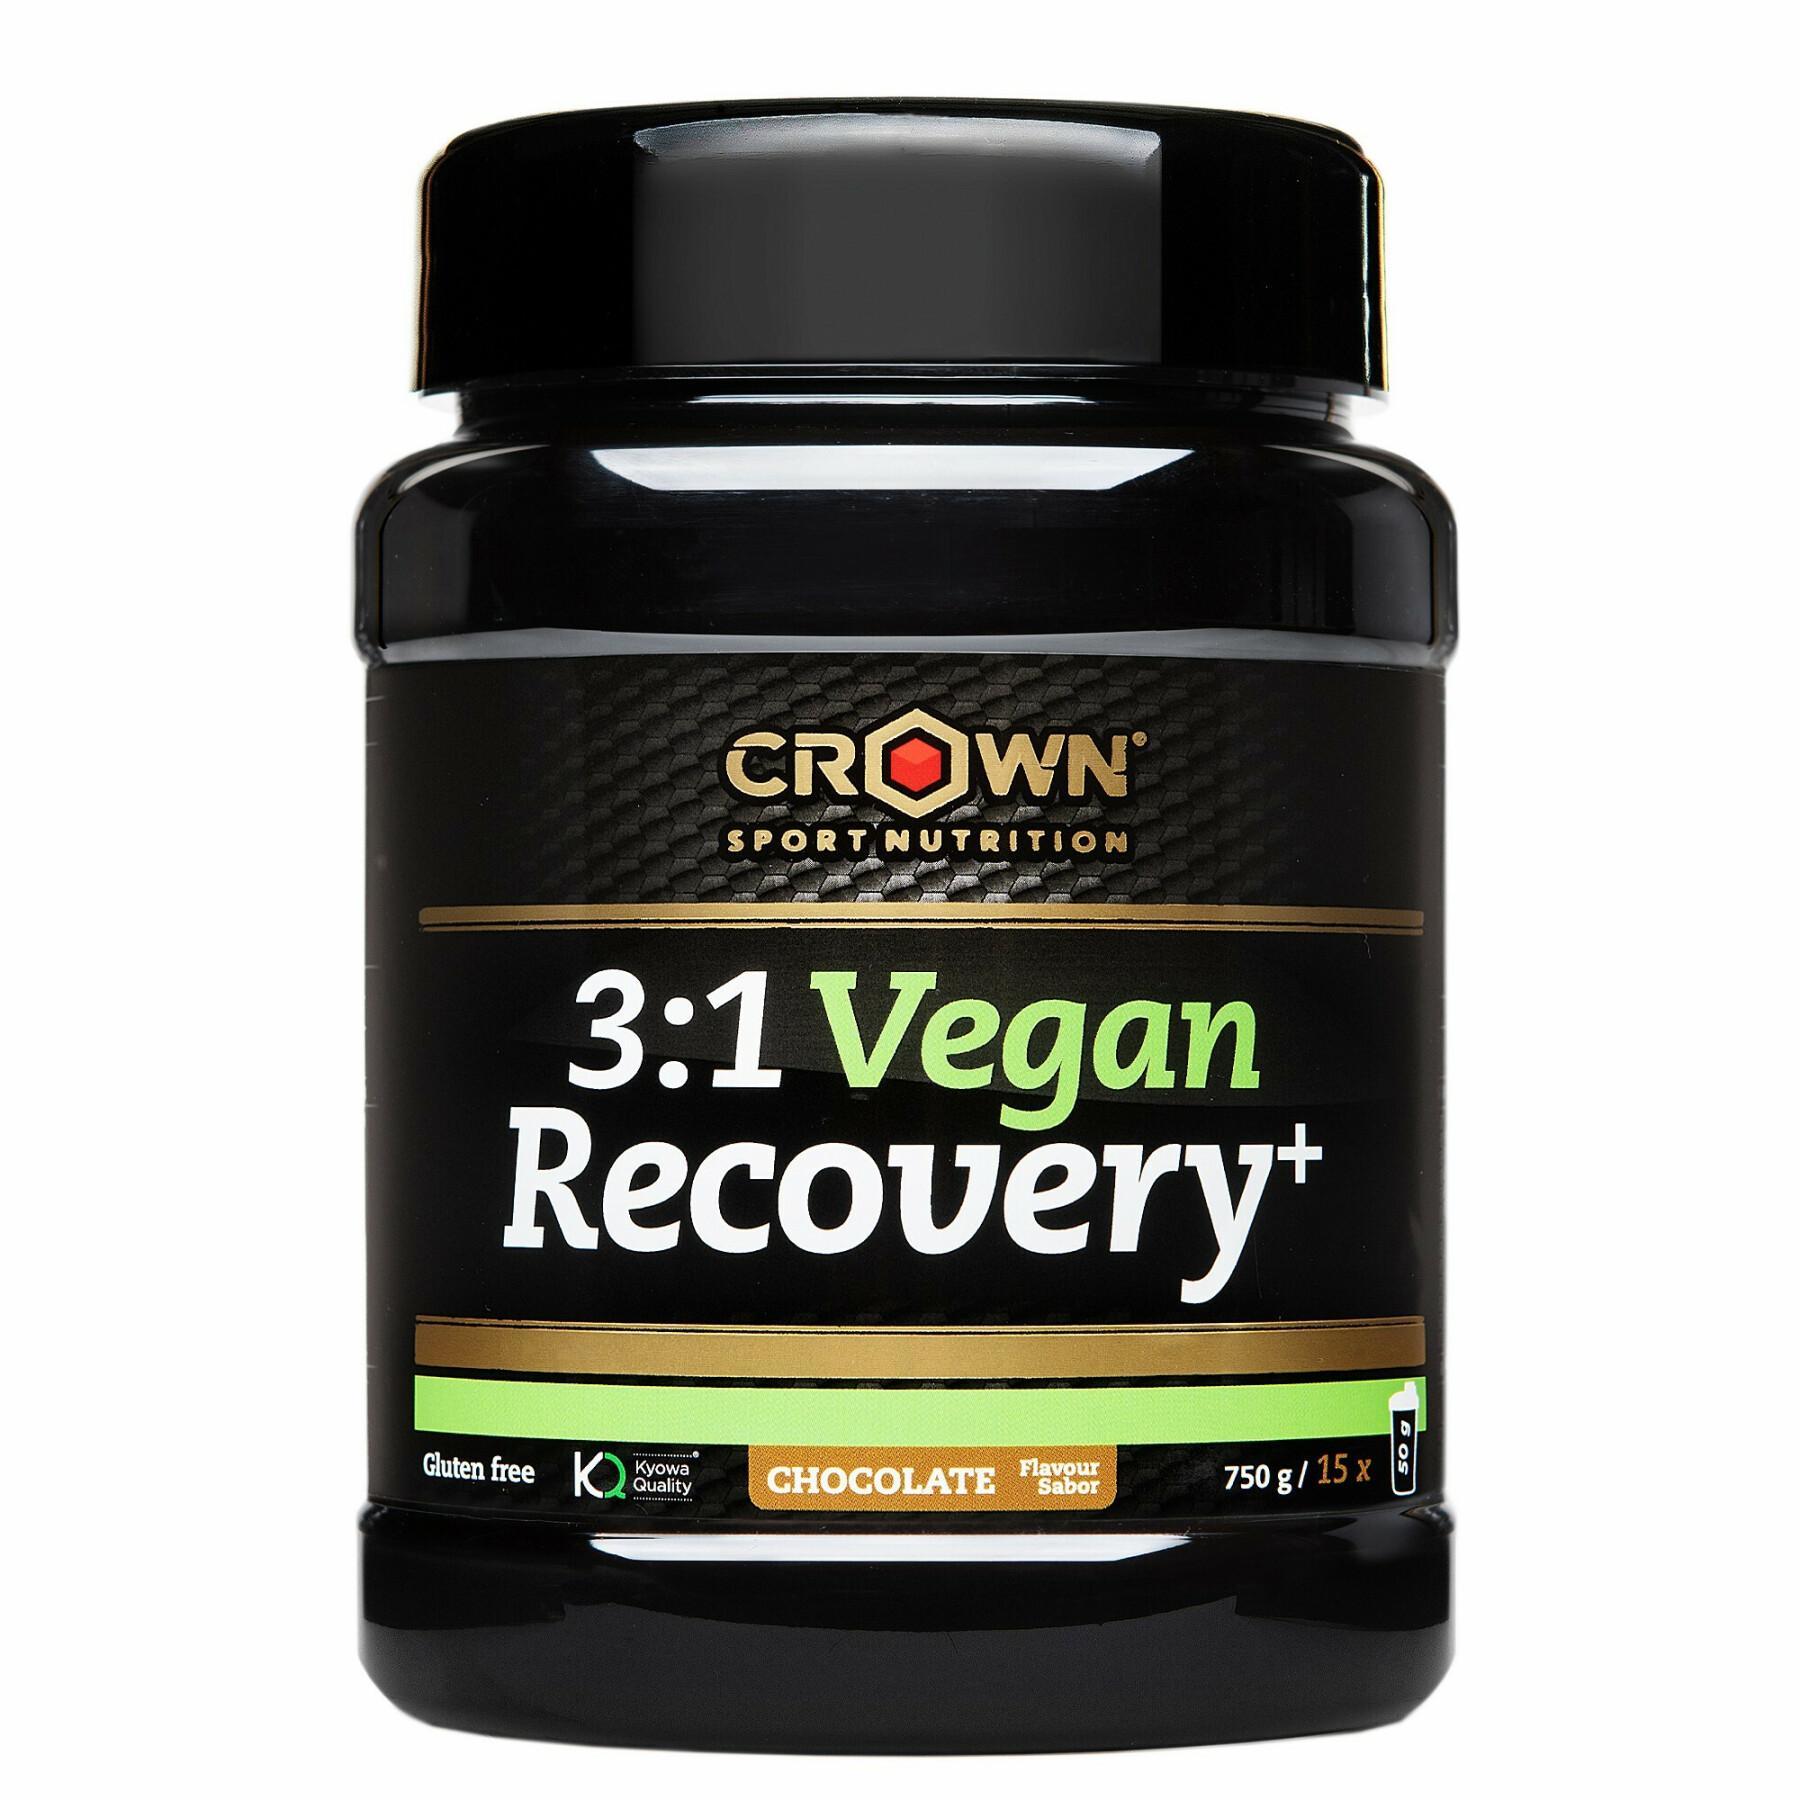 Complément de récupération Crown Sport Nutrition 3:1 Pro St - vanille - 590 g